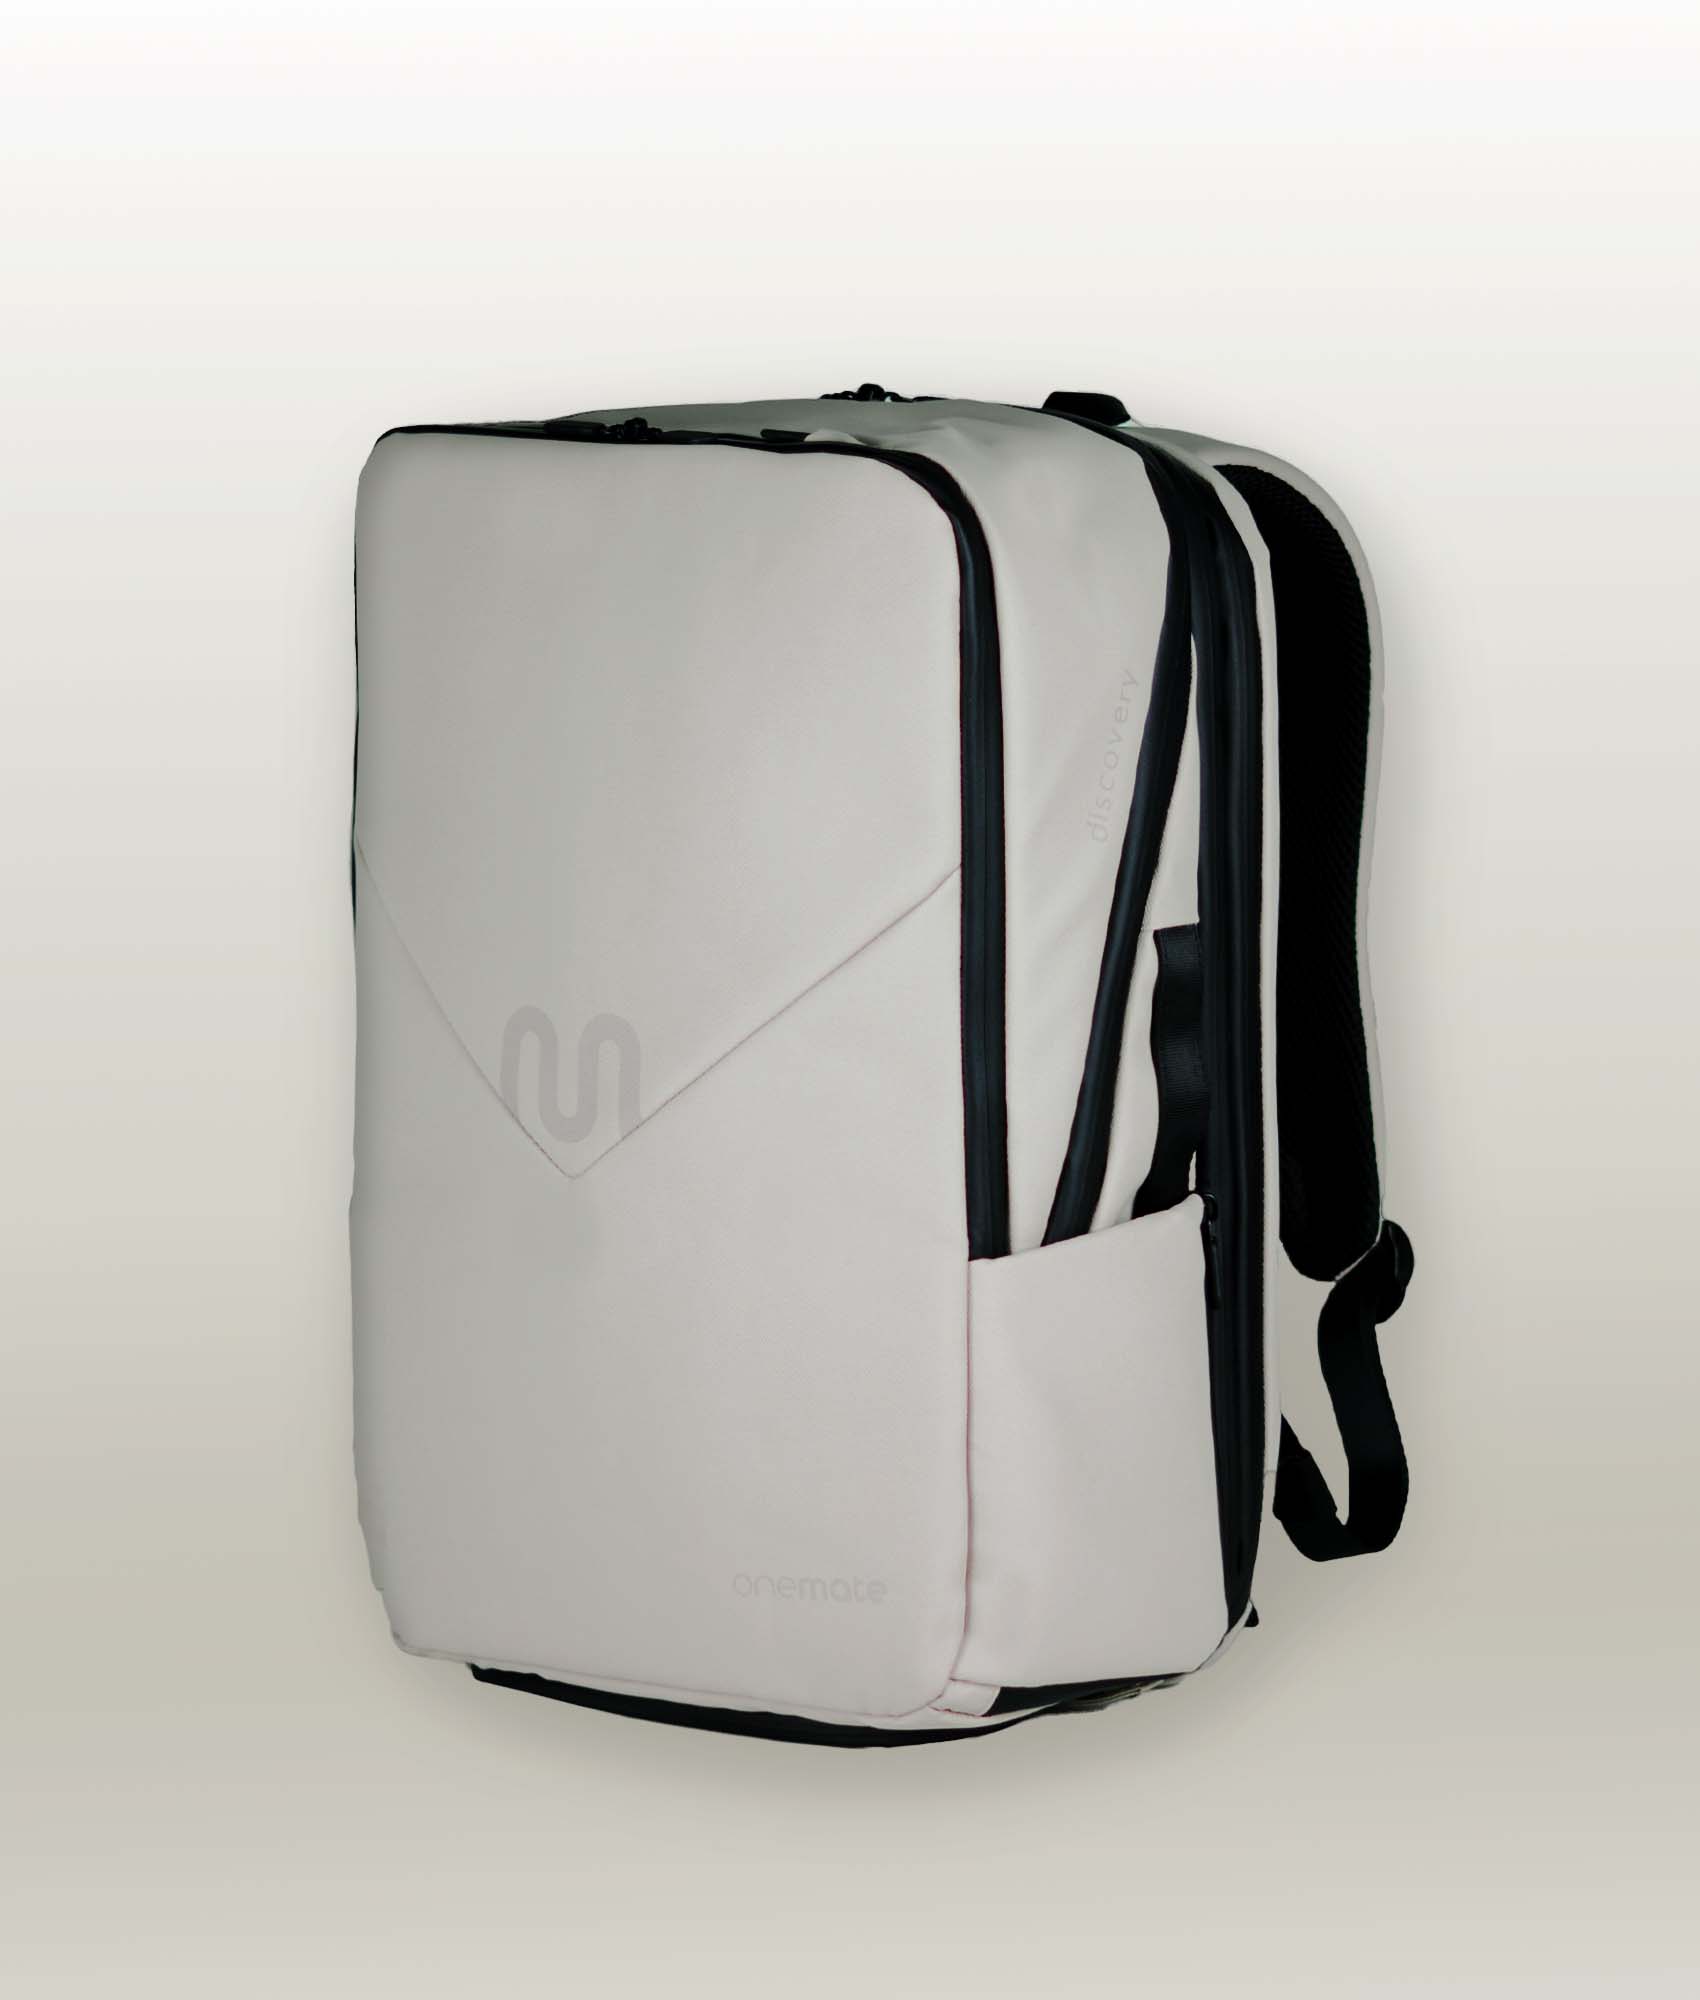 Backpack OneMate Rucksack kaufen bei Pro grau günstig